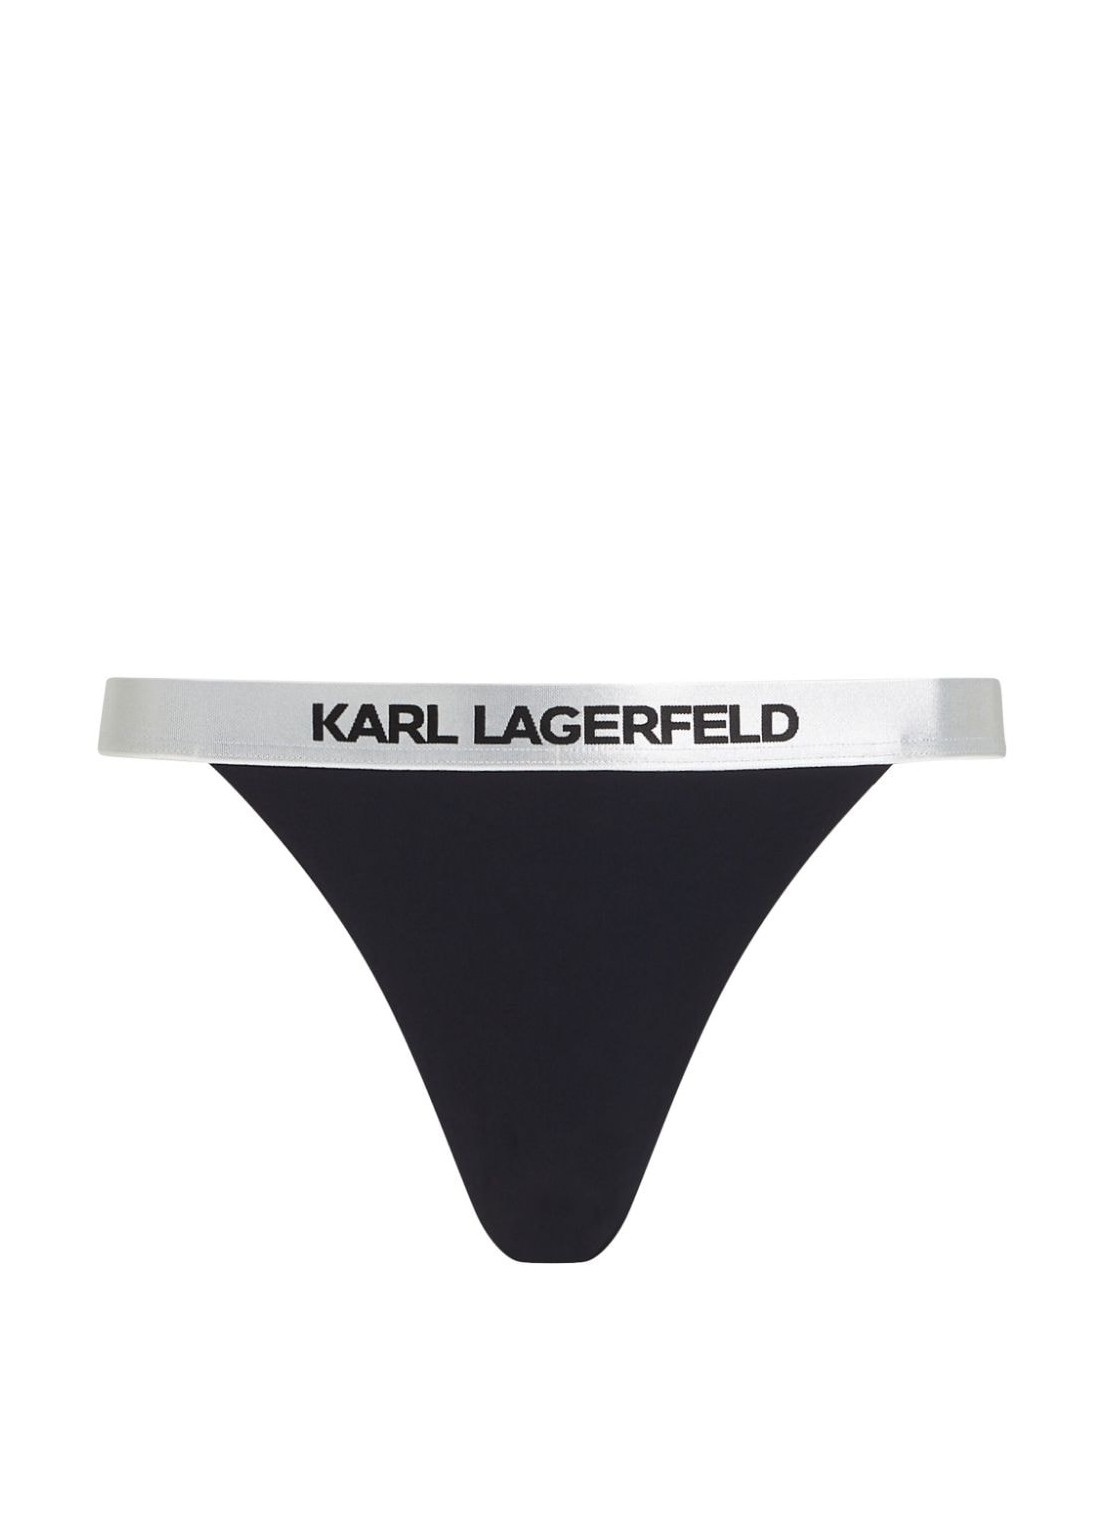 Bikini braga karl lagerfeld bikini panties womanlogo bikini bottom w/ elastic - 240w2219 999 talla S